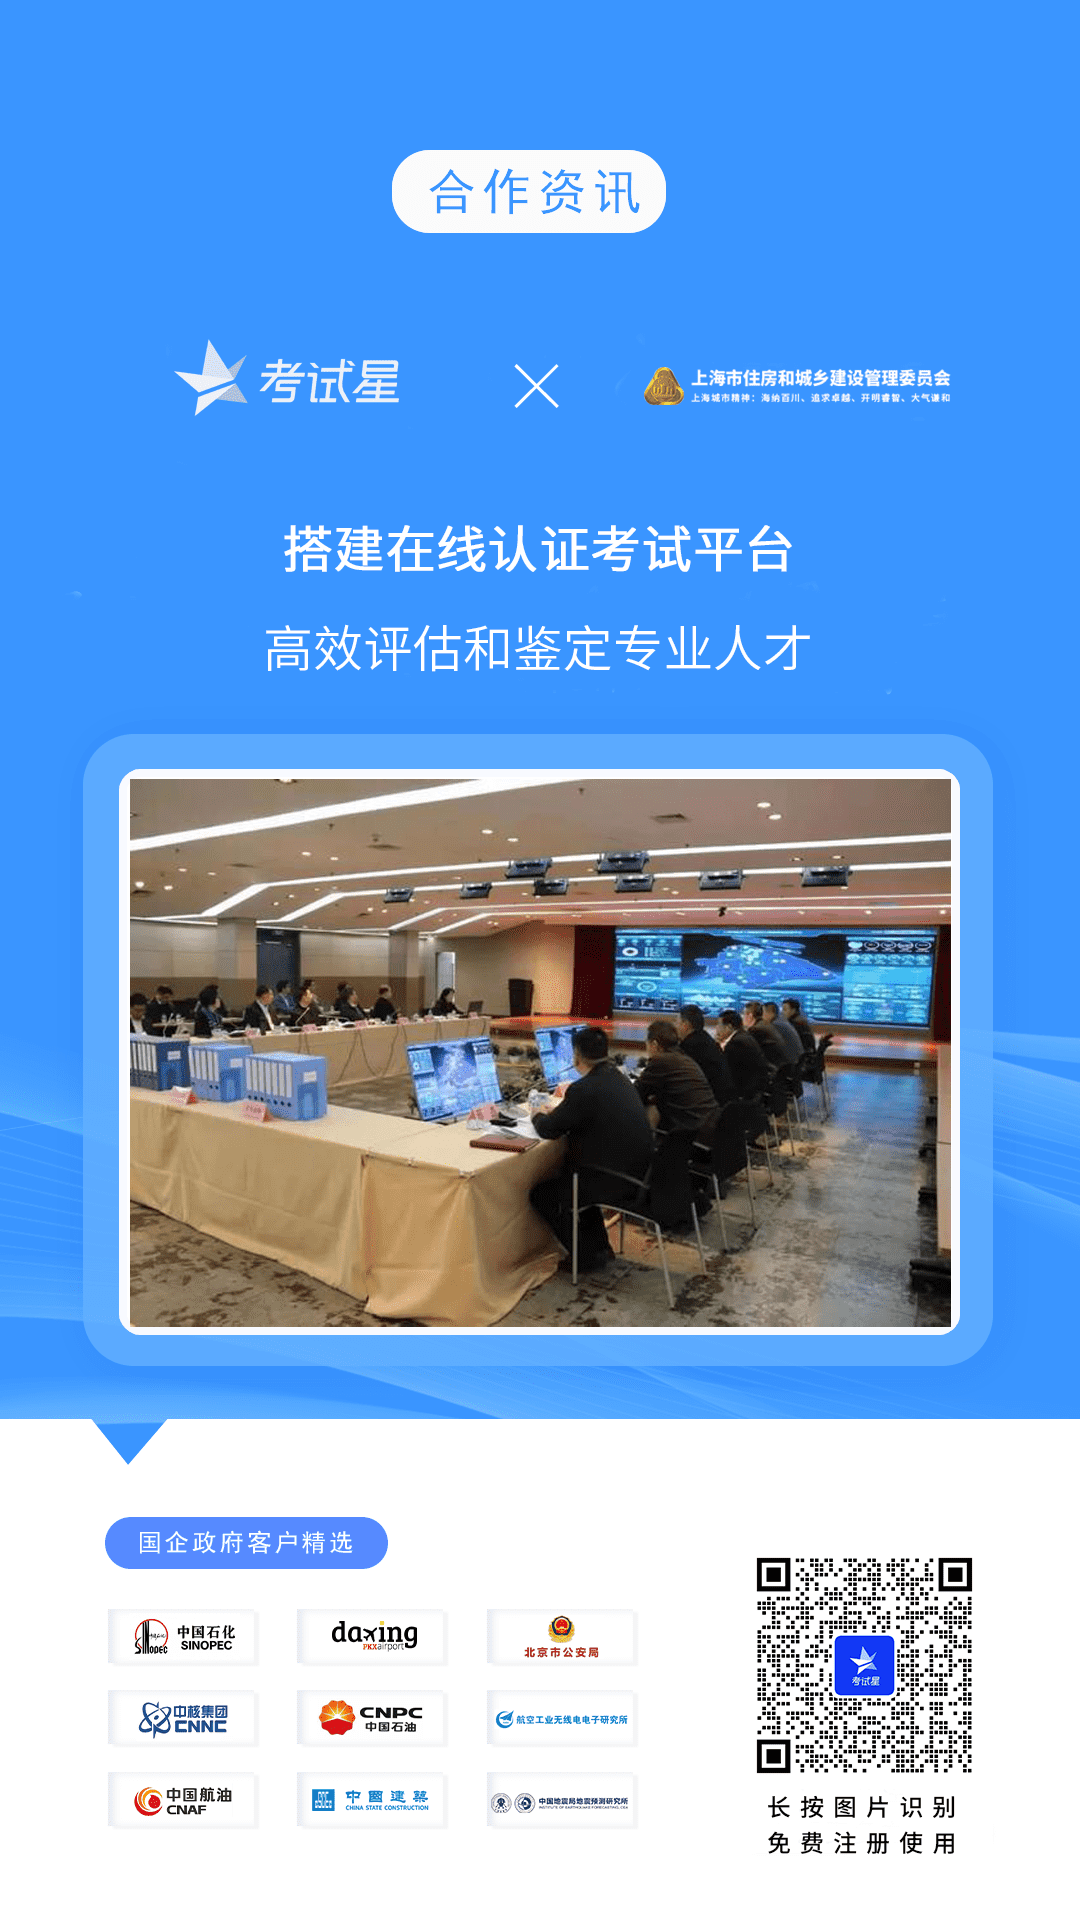 上海市住房和城乡建设管理委员会-考试星在线认证考试平台